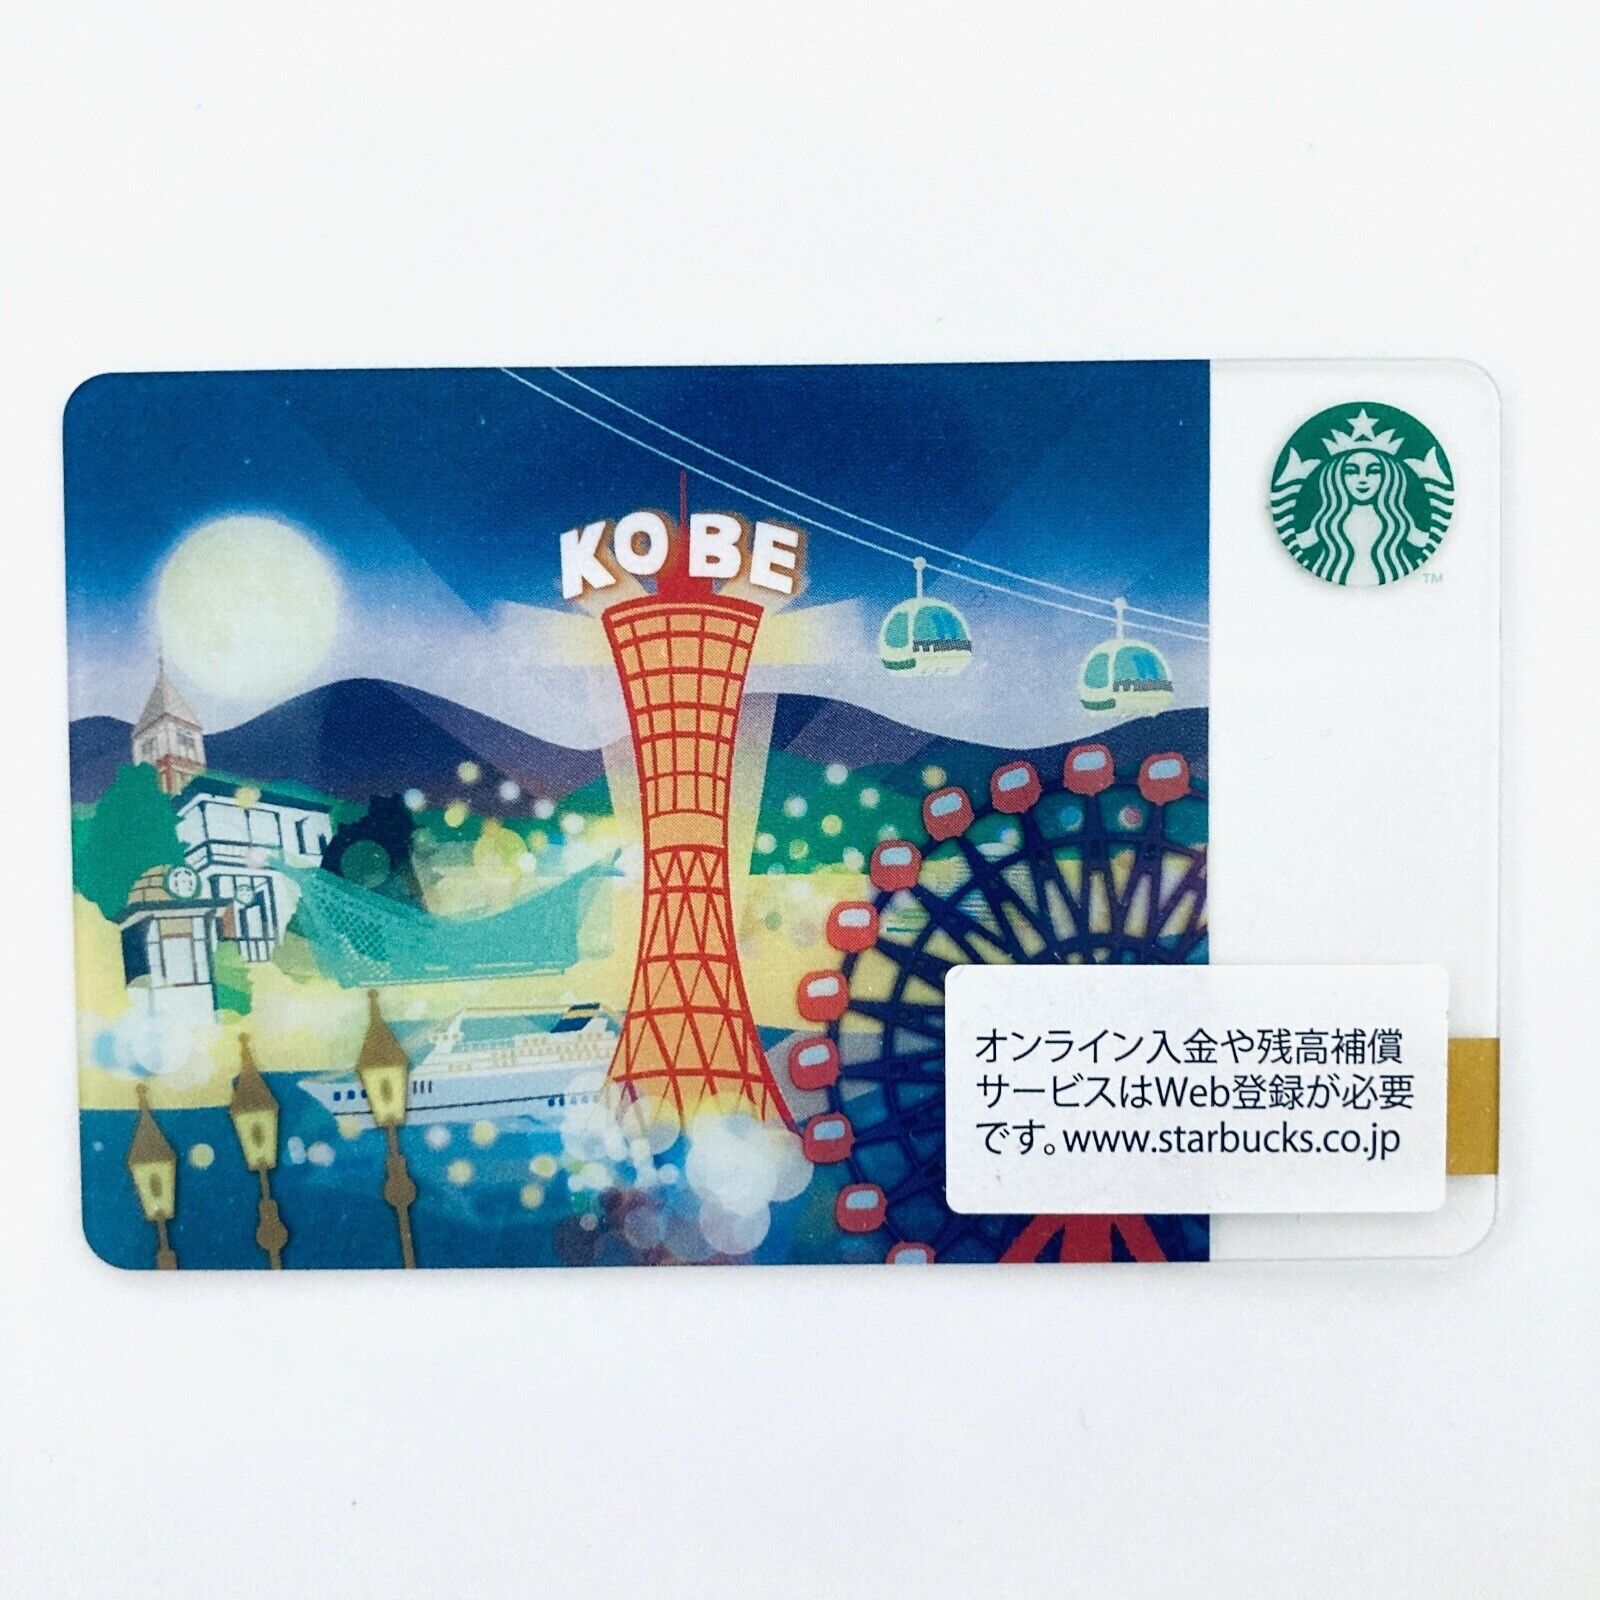 Starbucks Gift Card Japan KOBE 2013